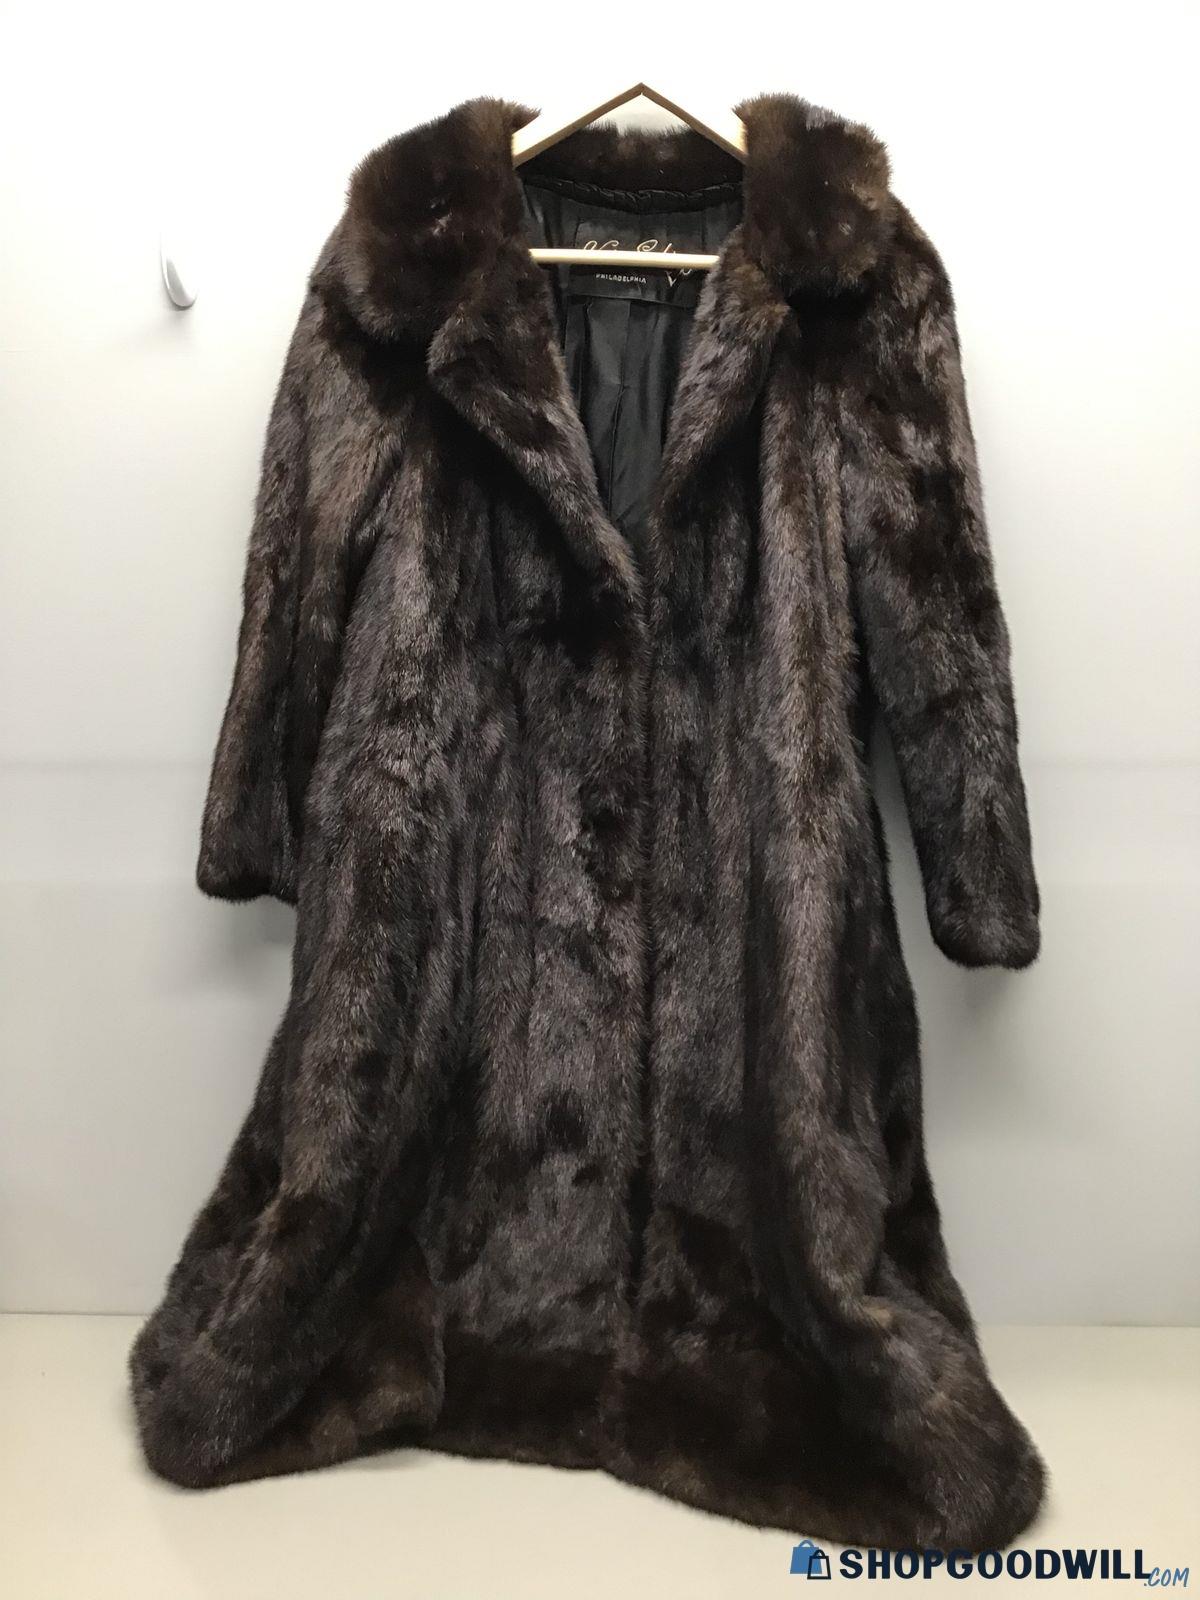 Victor Sacks Fur Coat - shopgoodwill.com